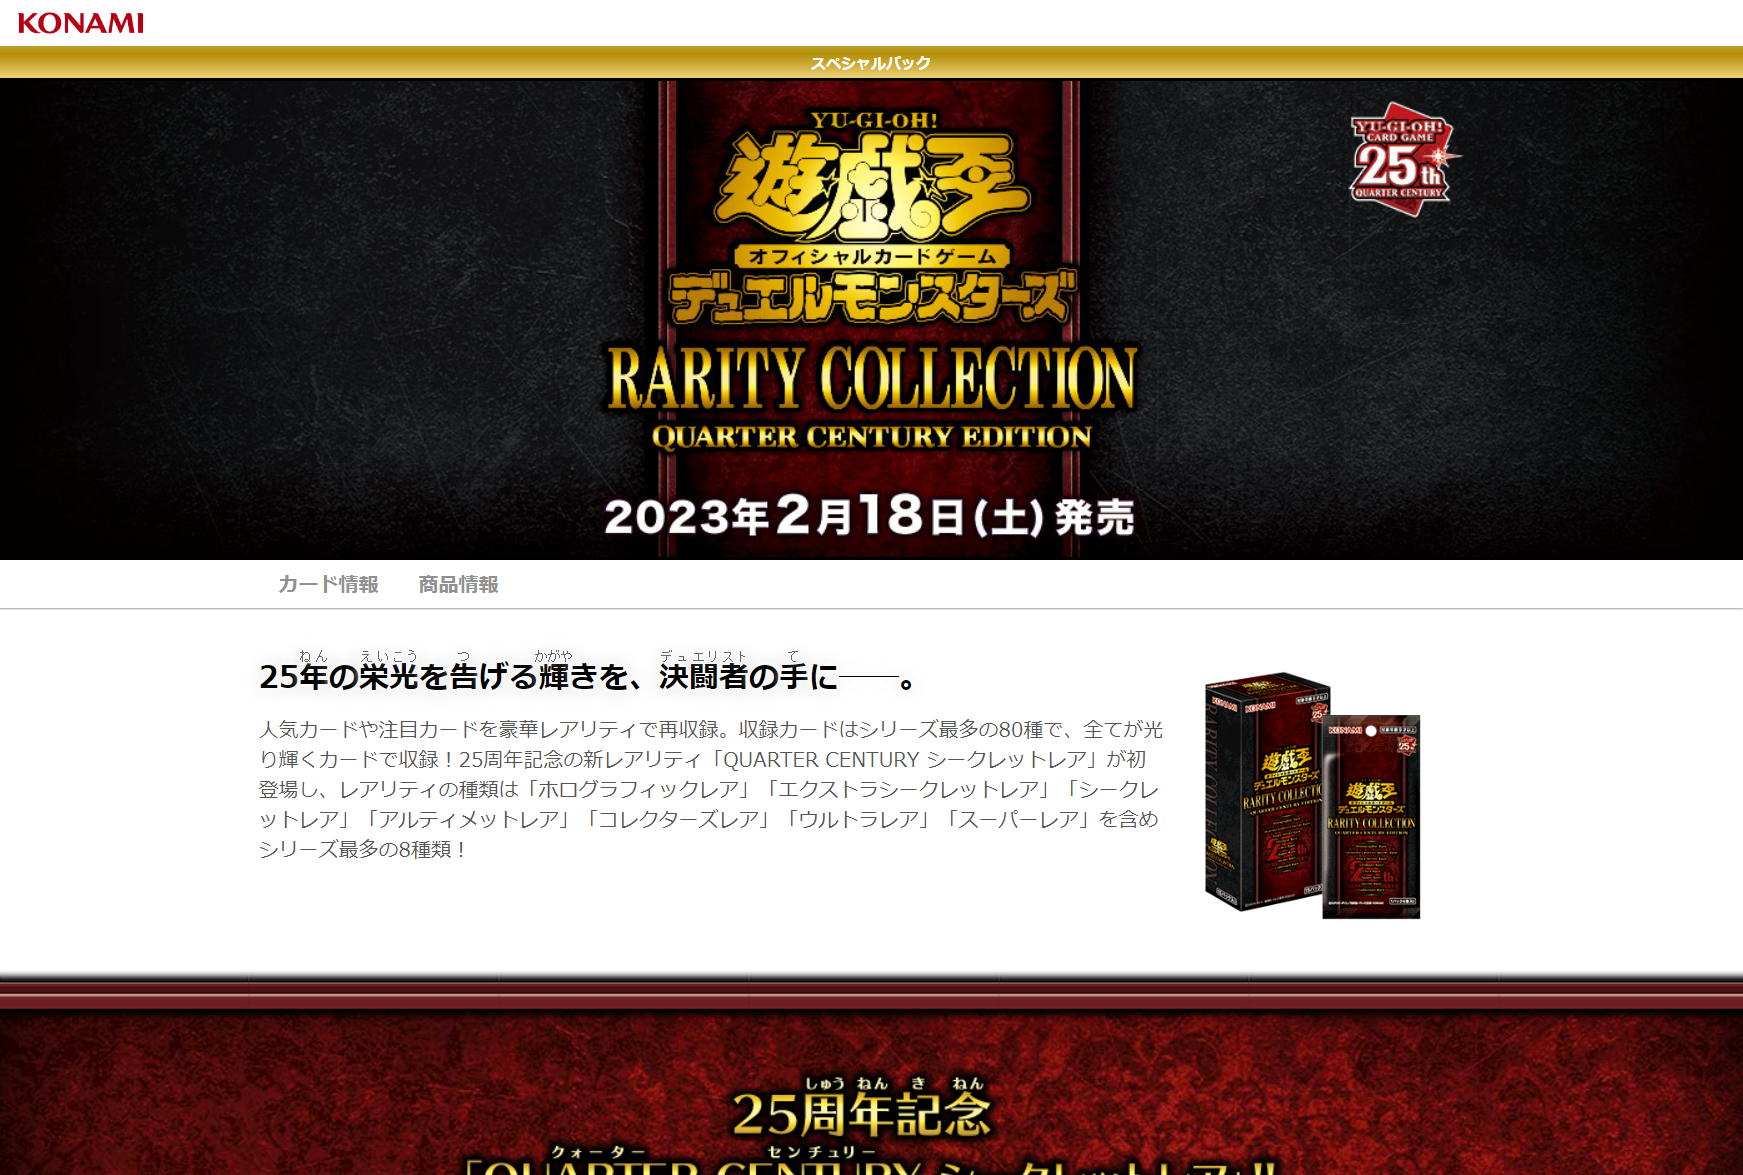 期間限定キャンペーン 遊戯王 レアリティコレクション 25周年記念 3BOXシュリンク付